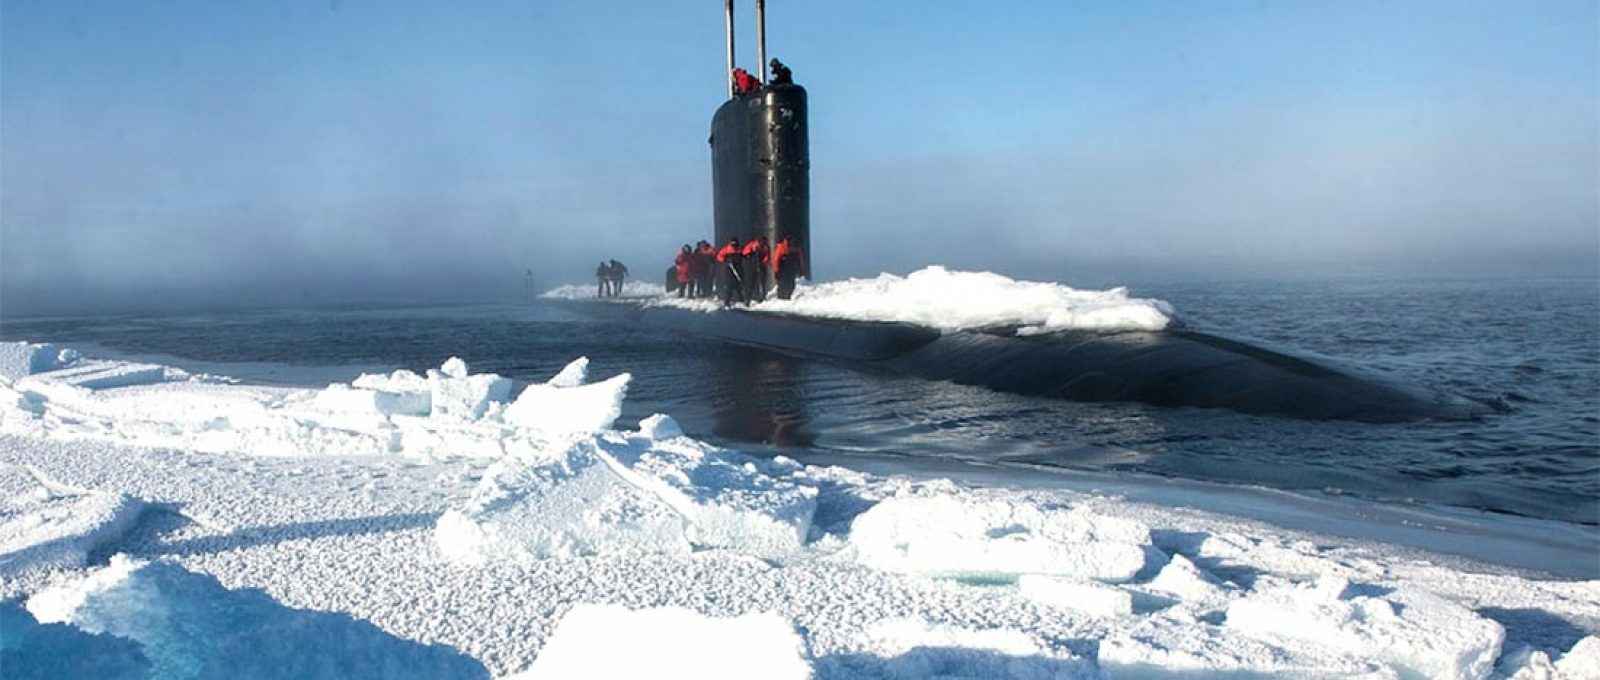 Submarino USS Hartford emerge perto do Acampamento Sargo durante o Exercício do Gelo 2016 no Círculo Polar Ártico em 19 de março de 2016 (Foto: Tyler Thompson/Marinha dos EUA).